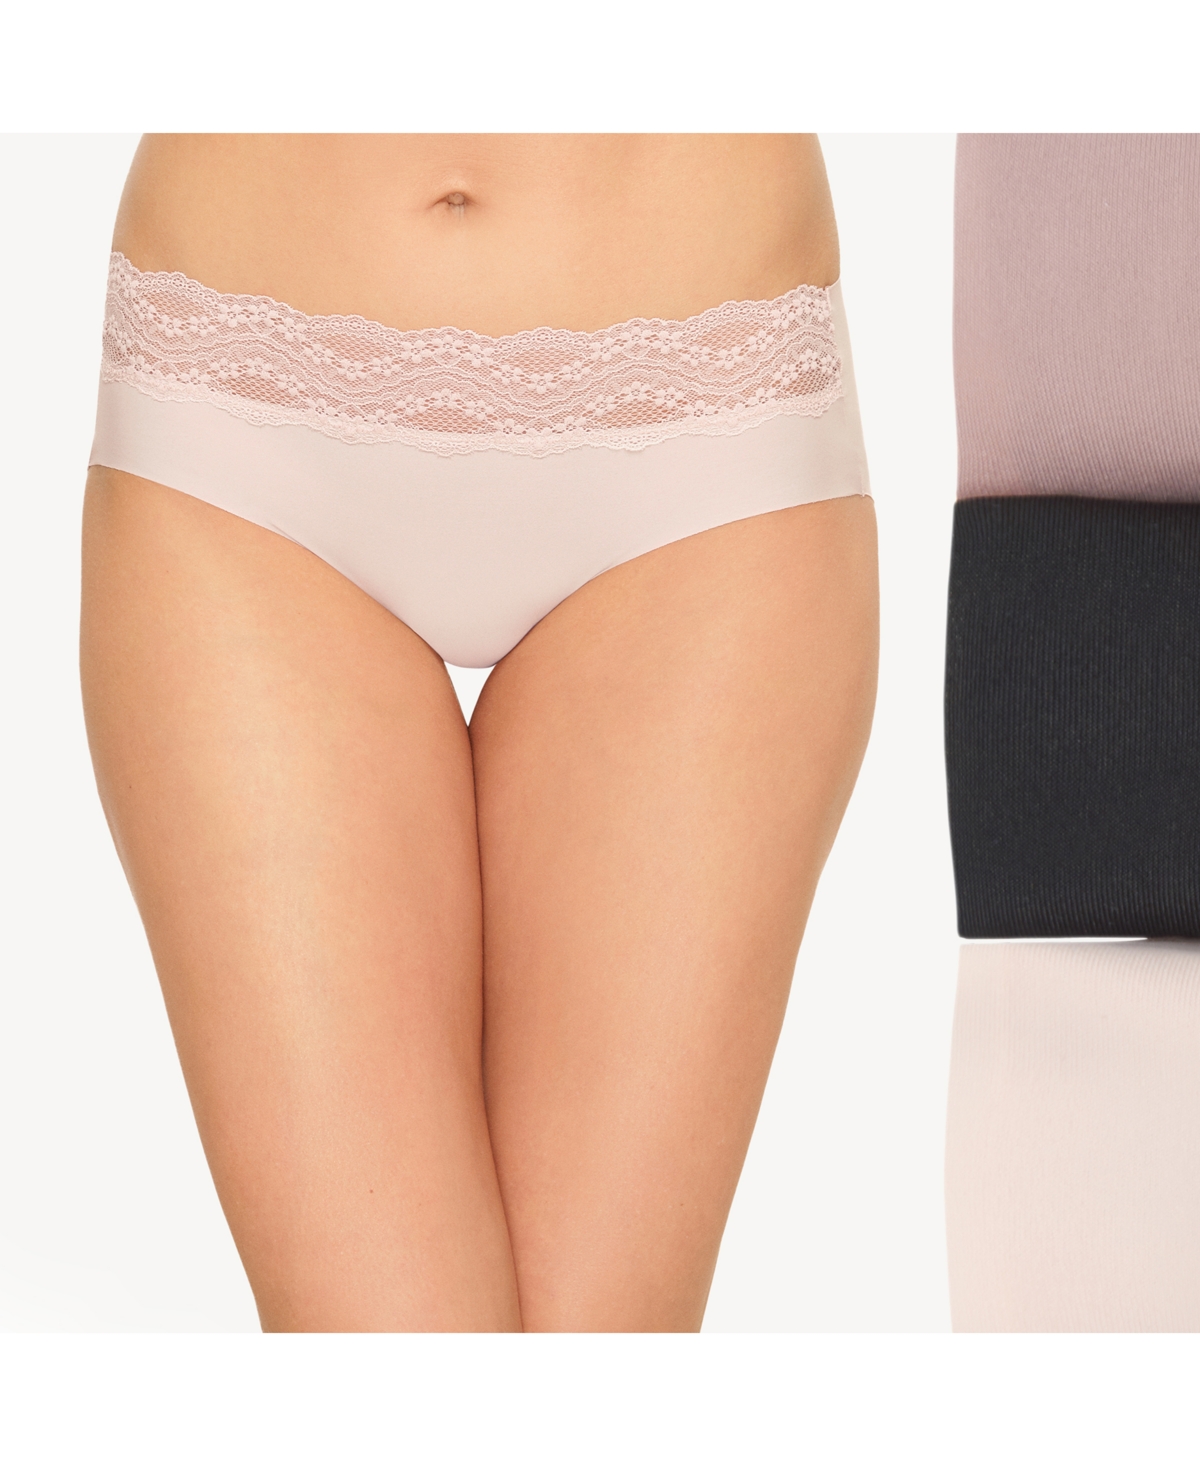 Women's 3-Pk. b.bare Lace-Trim Hipster Underwear - Night, Antler, Rose Smoke